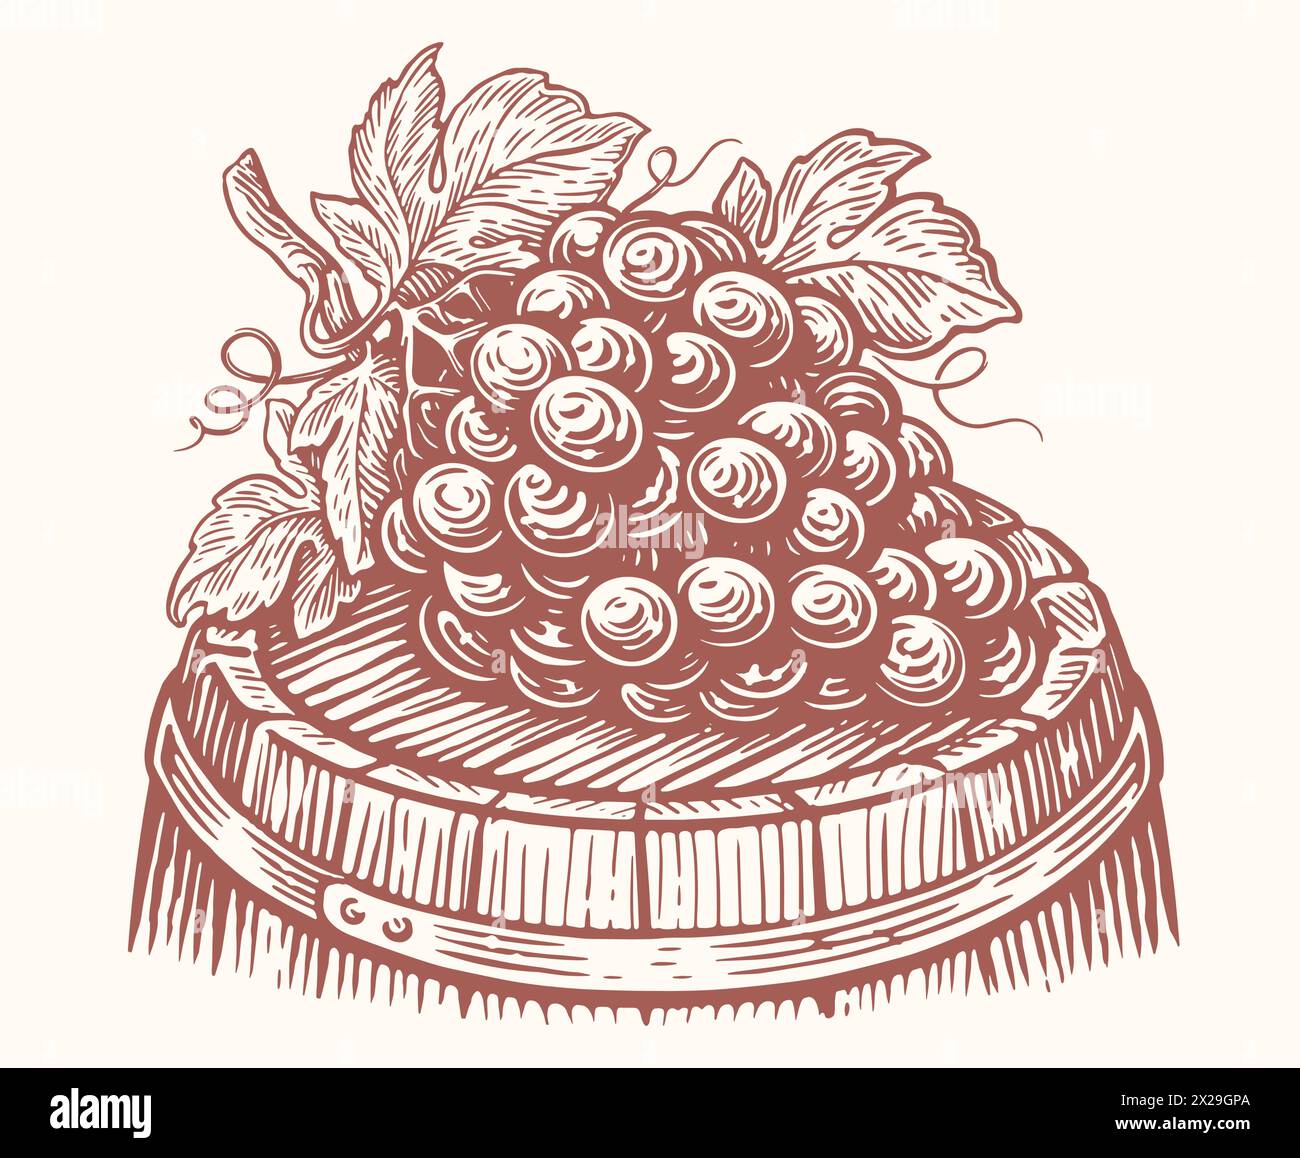 Bouquet de raisins mûrs repose sur un tonneau en bois avec du vin. Vignoble, illustration vectorielle d'esquisse de cave Illustration de Vecteur